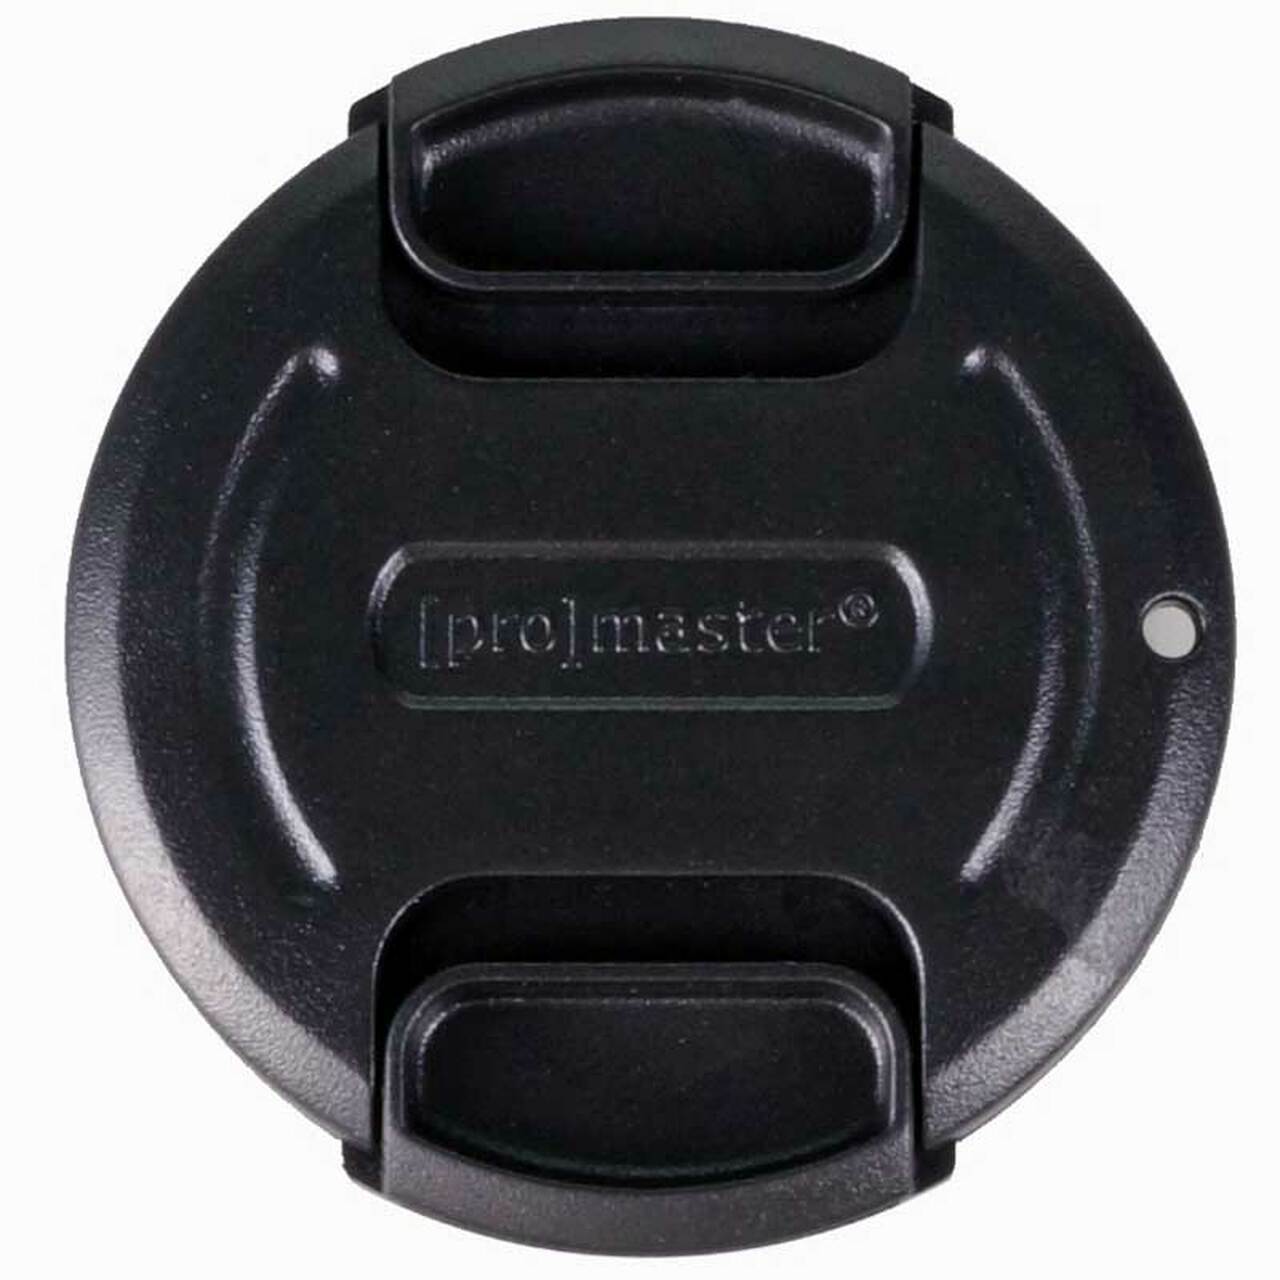 Promaster 1454 105mm Lens Cap